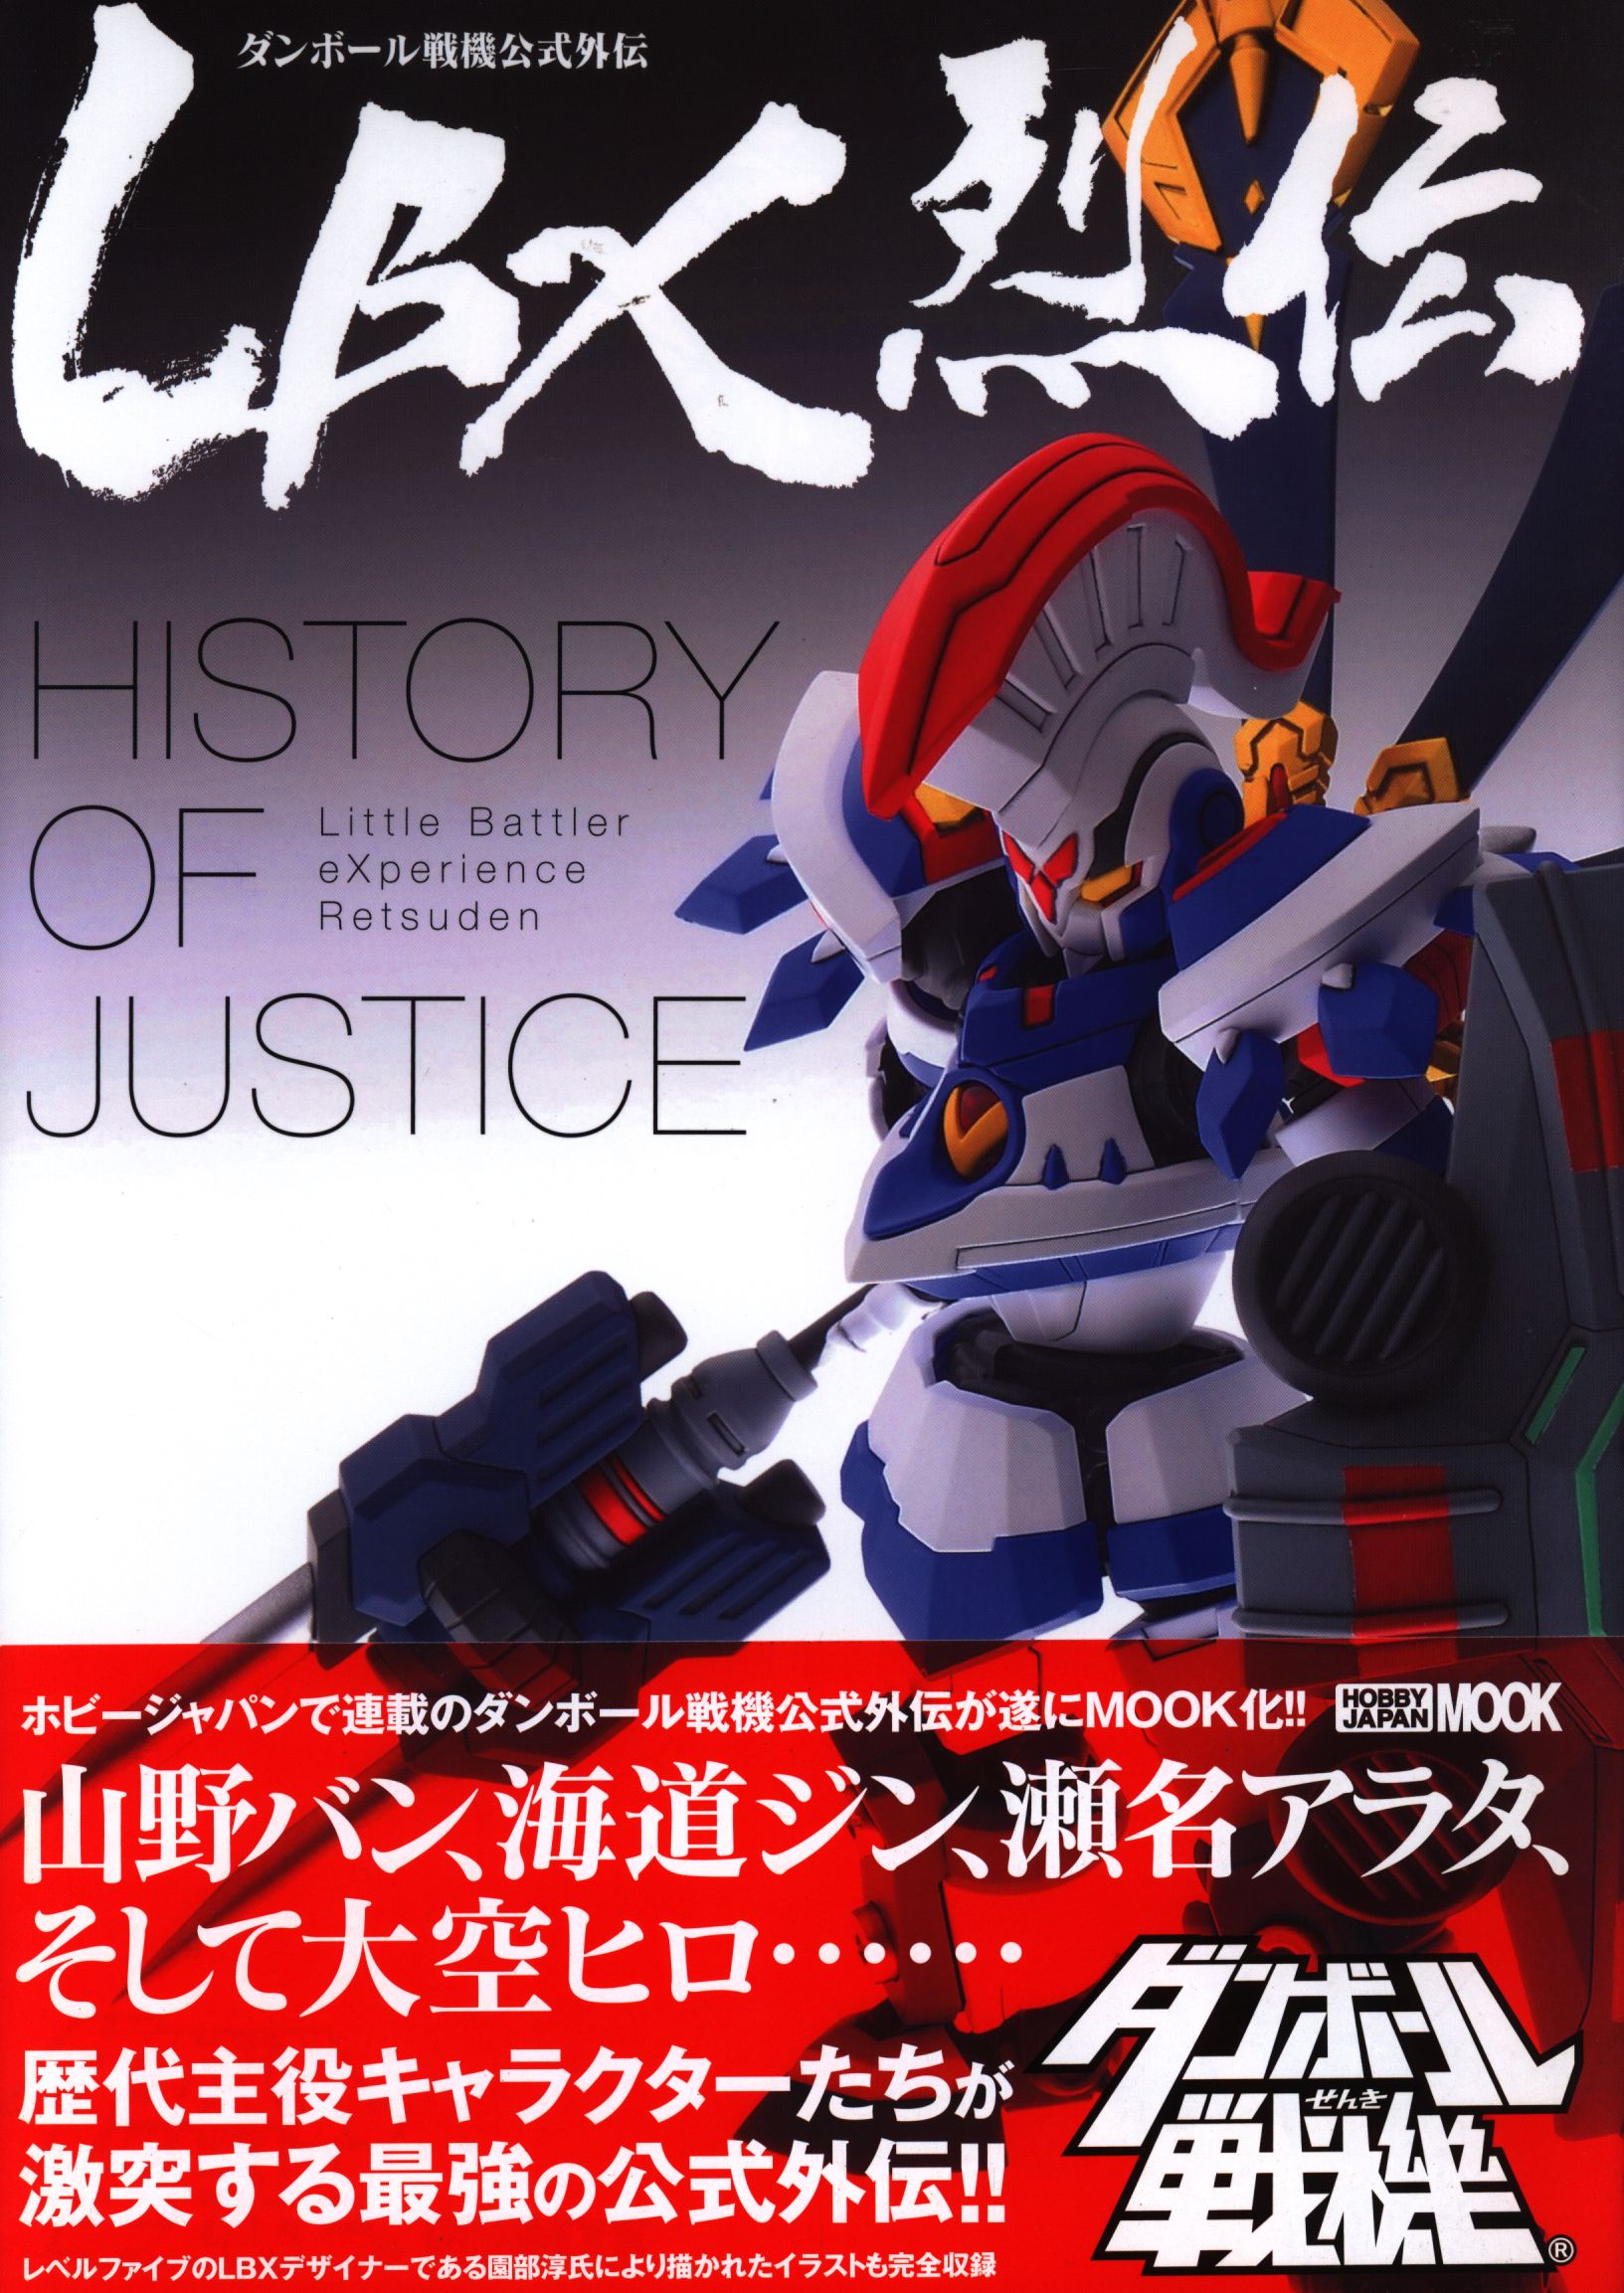 ダンボール戦機公式外伝 LBX烈伝 History of Justice-www.electrowelt.com